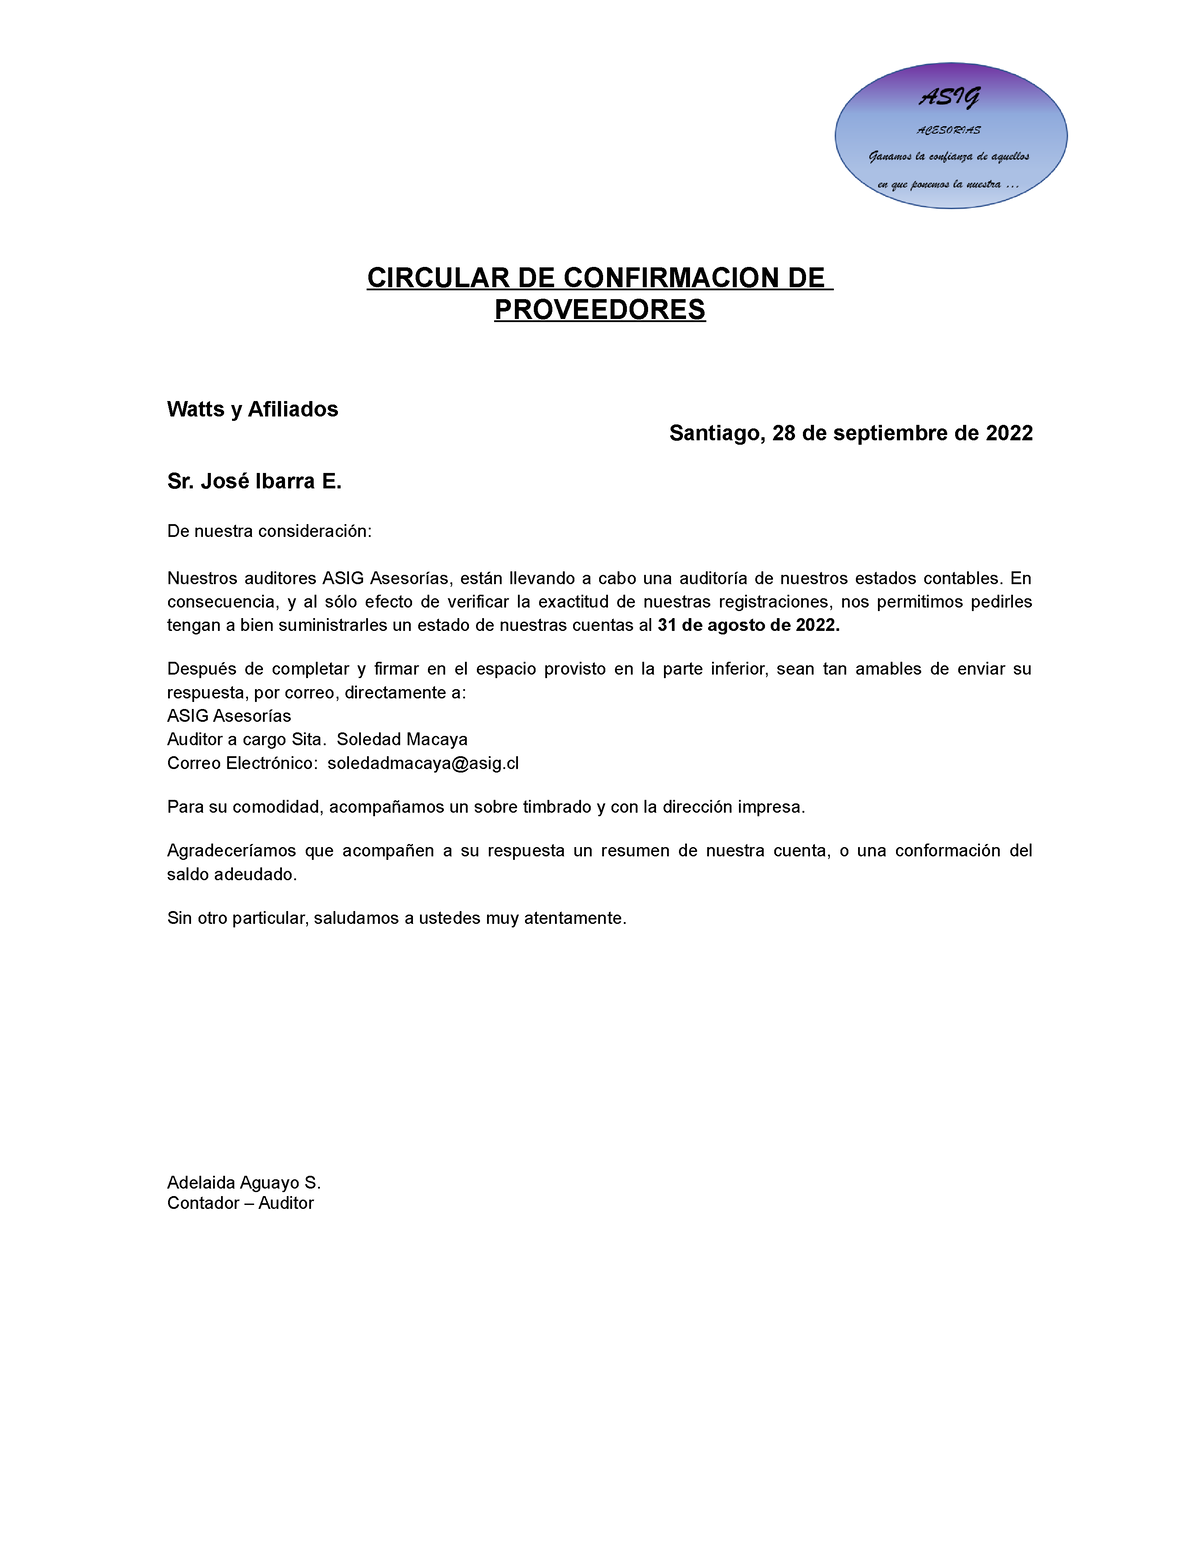 Carta-de-proveedores - CIRCULAR DE CONFIRMACION DE PROVEEDORES Watts y  Afiliados Santiago, 28 de - Studocu